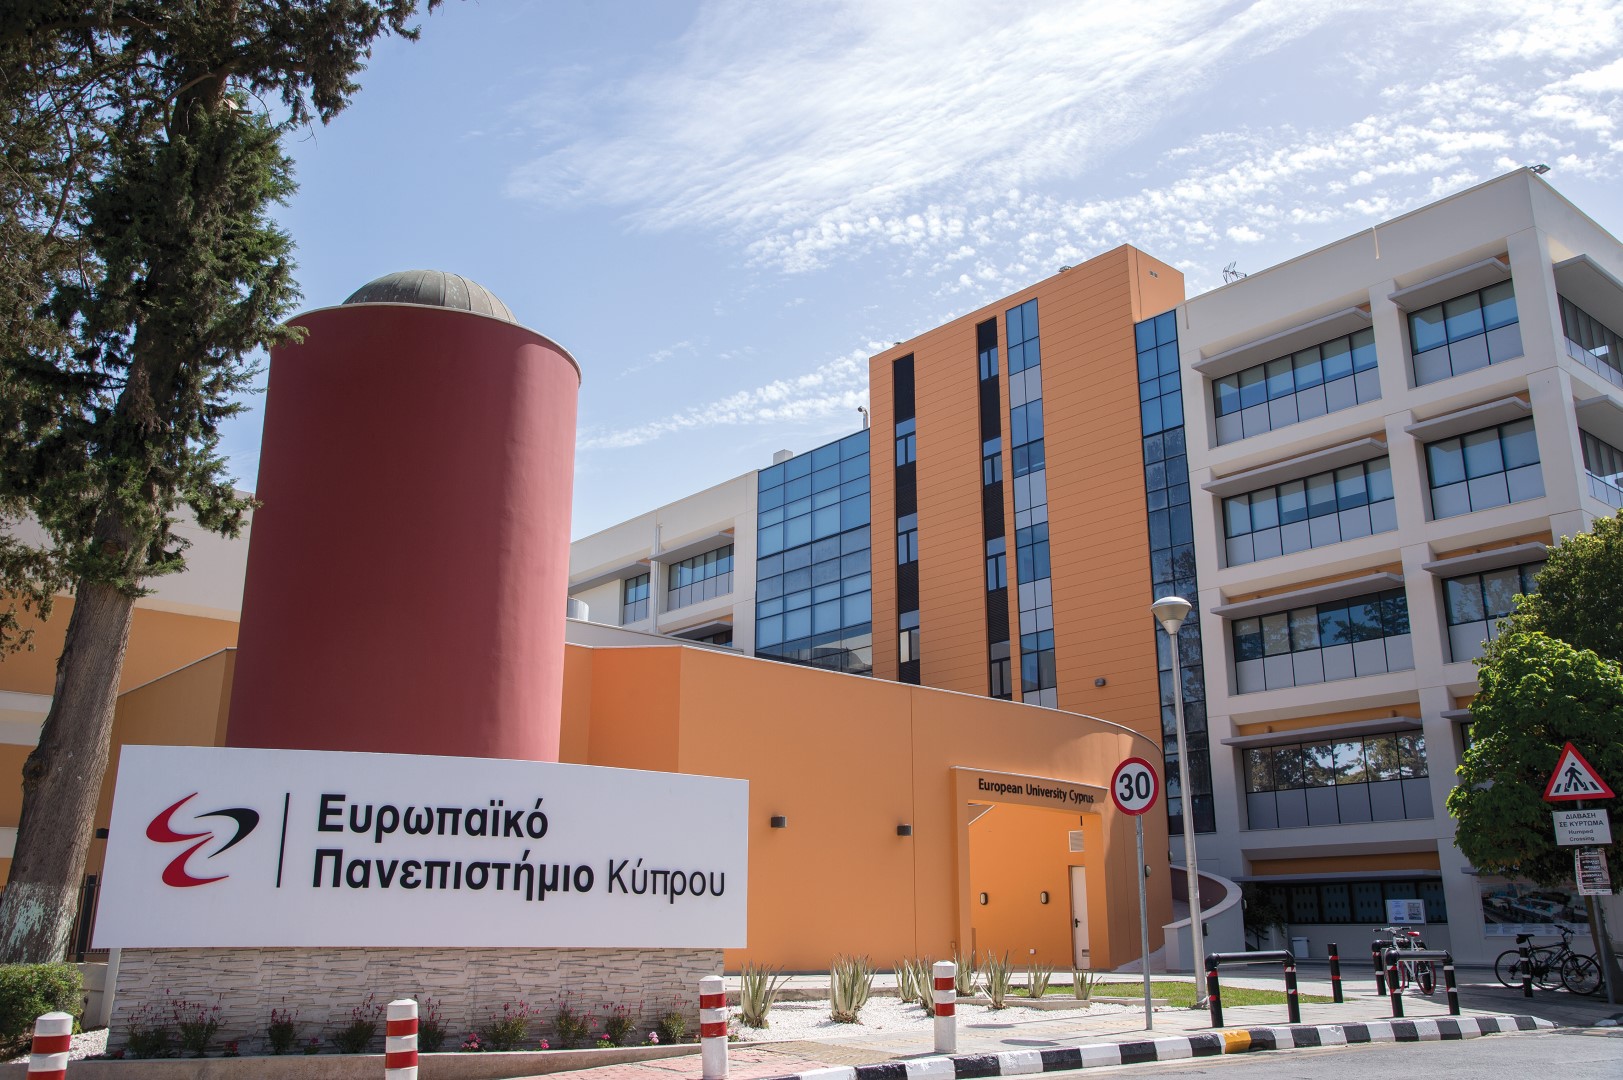 Ευρωπαϊκό Πανεπιστήμιο Κύπρου: Βιοïατρικές Επιστήμες - Σπουδές σε έναν ανερχόμενο τομέα 